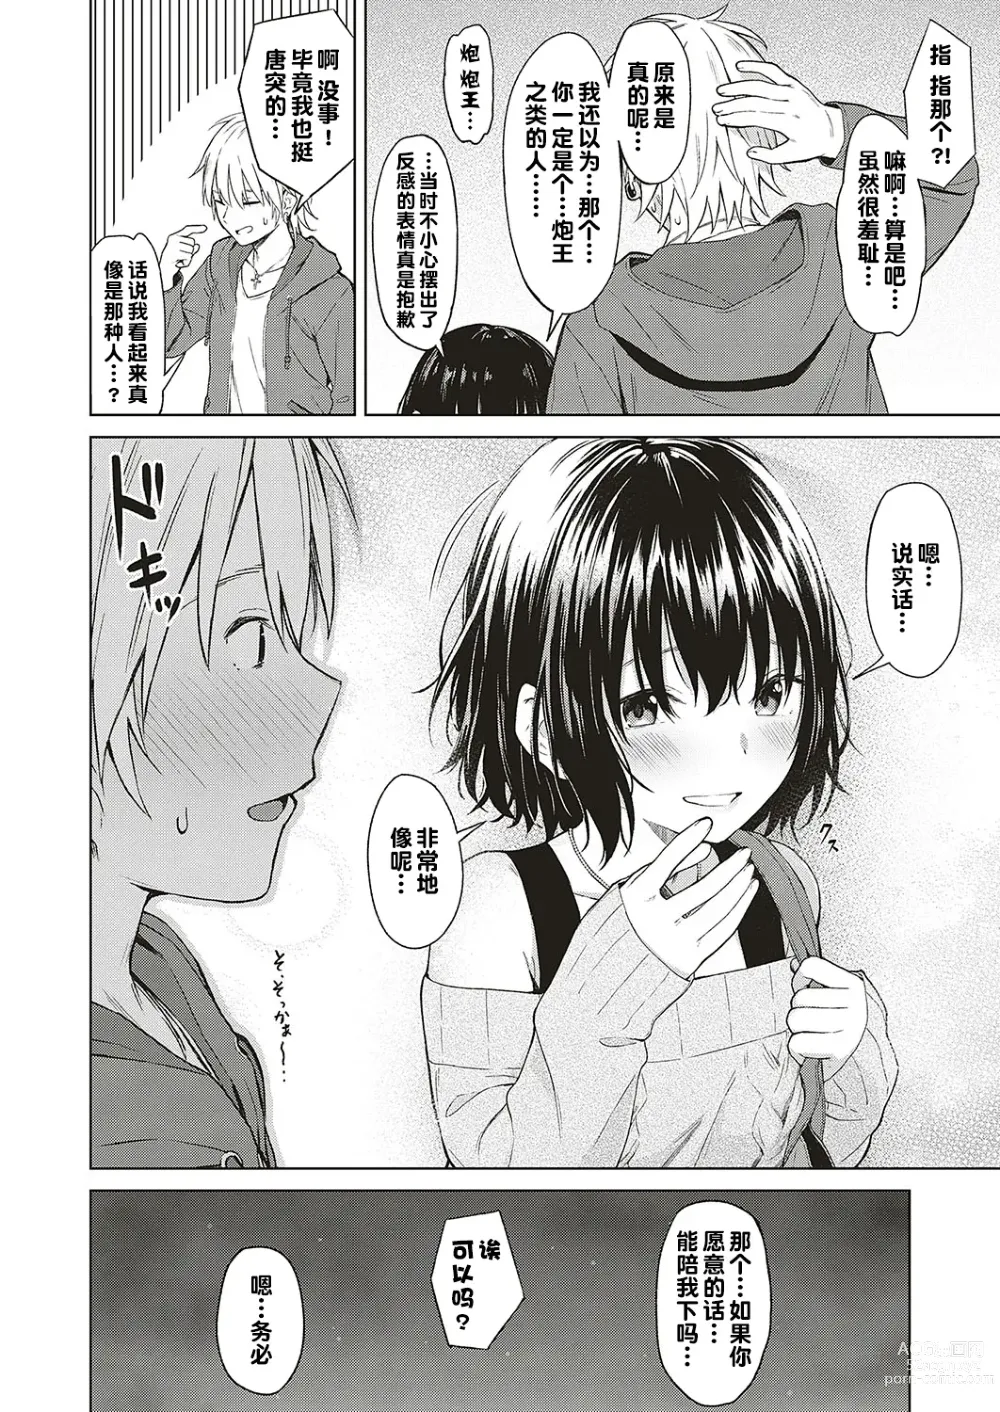 Page 6 of manga Analogy